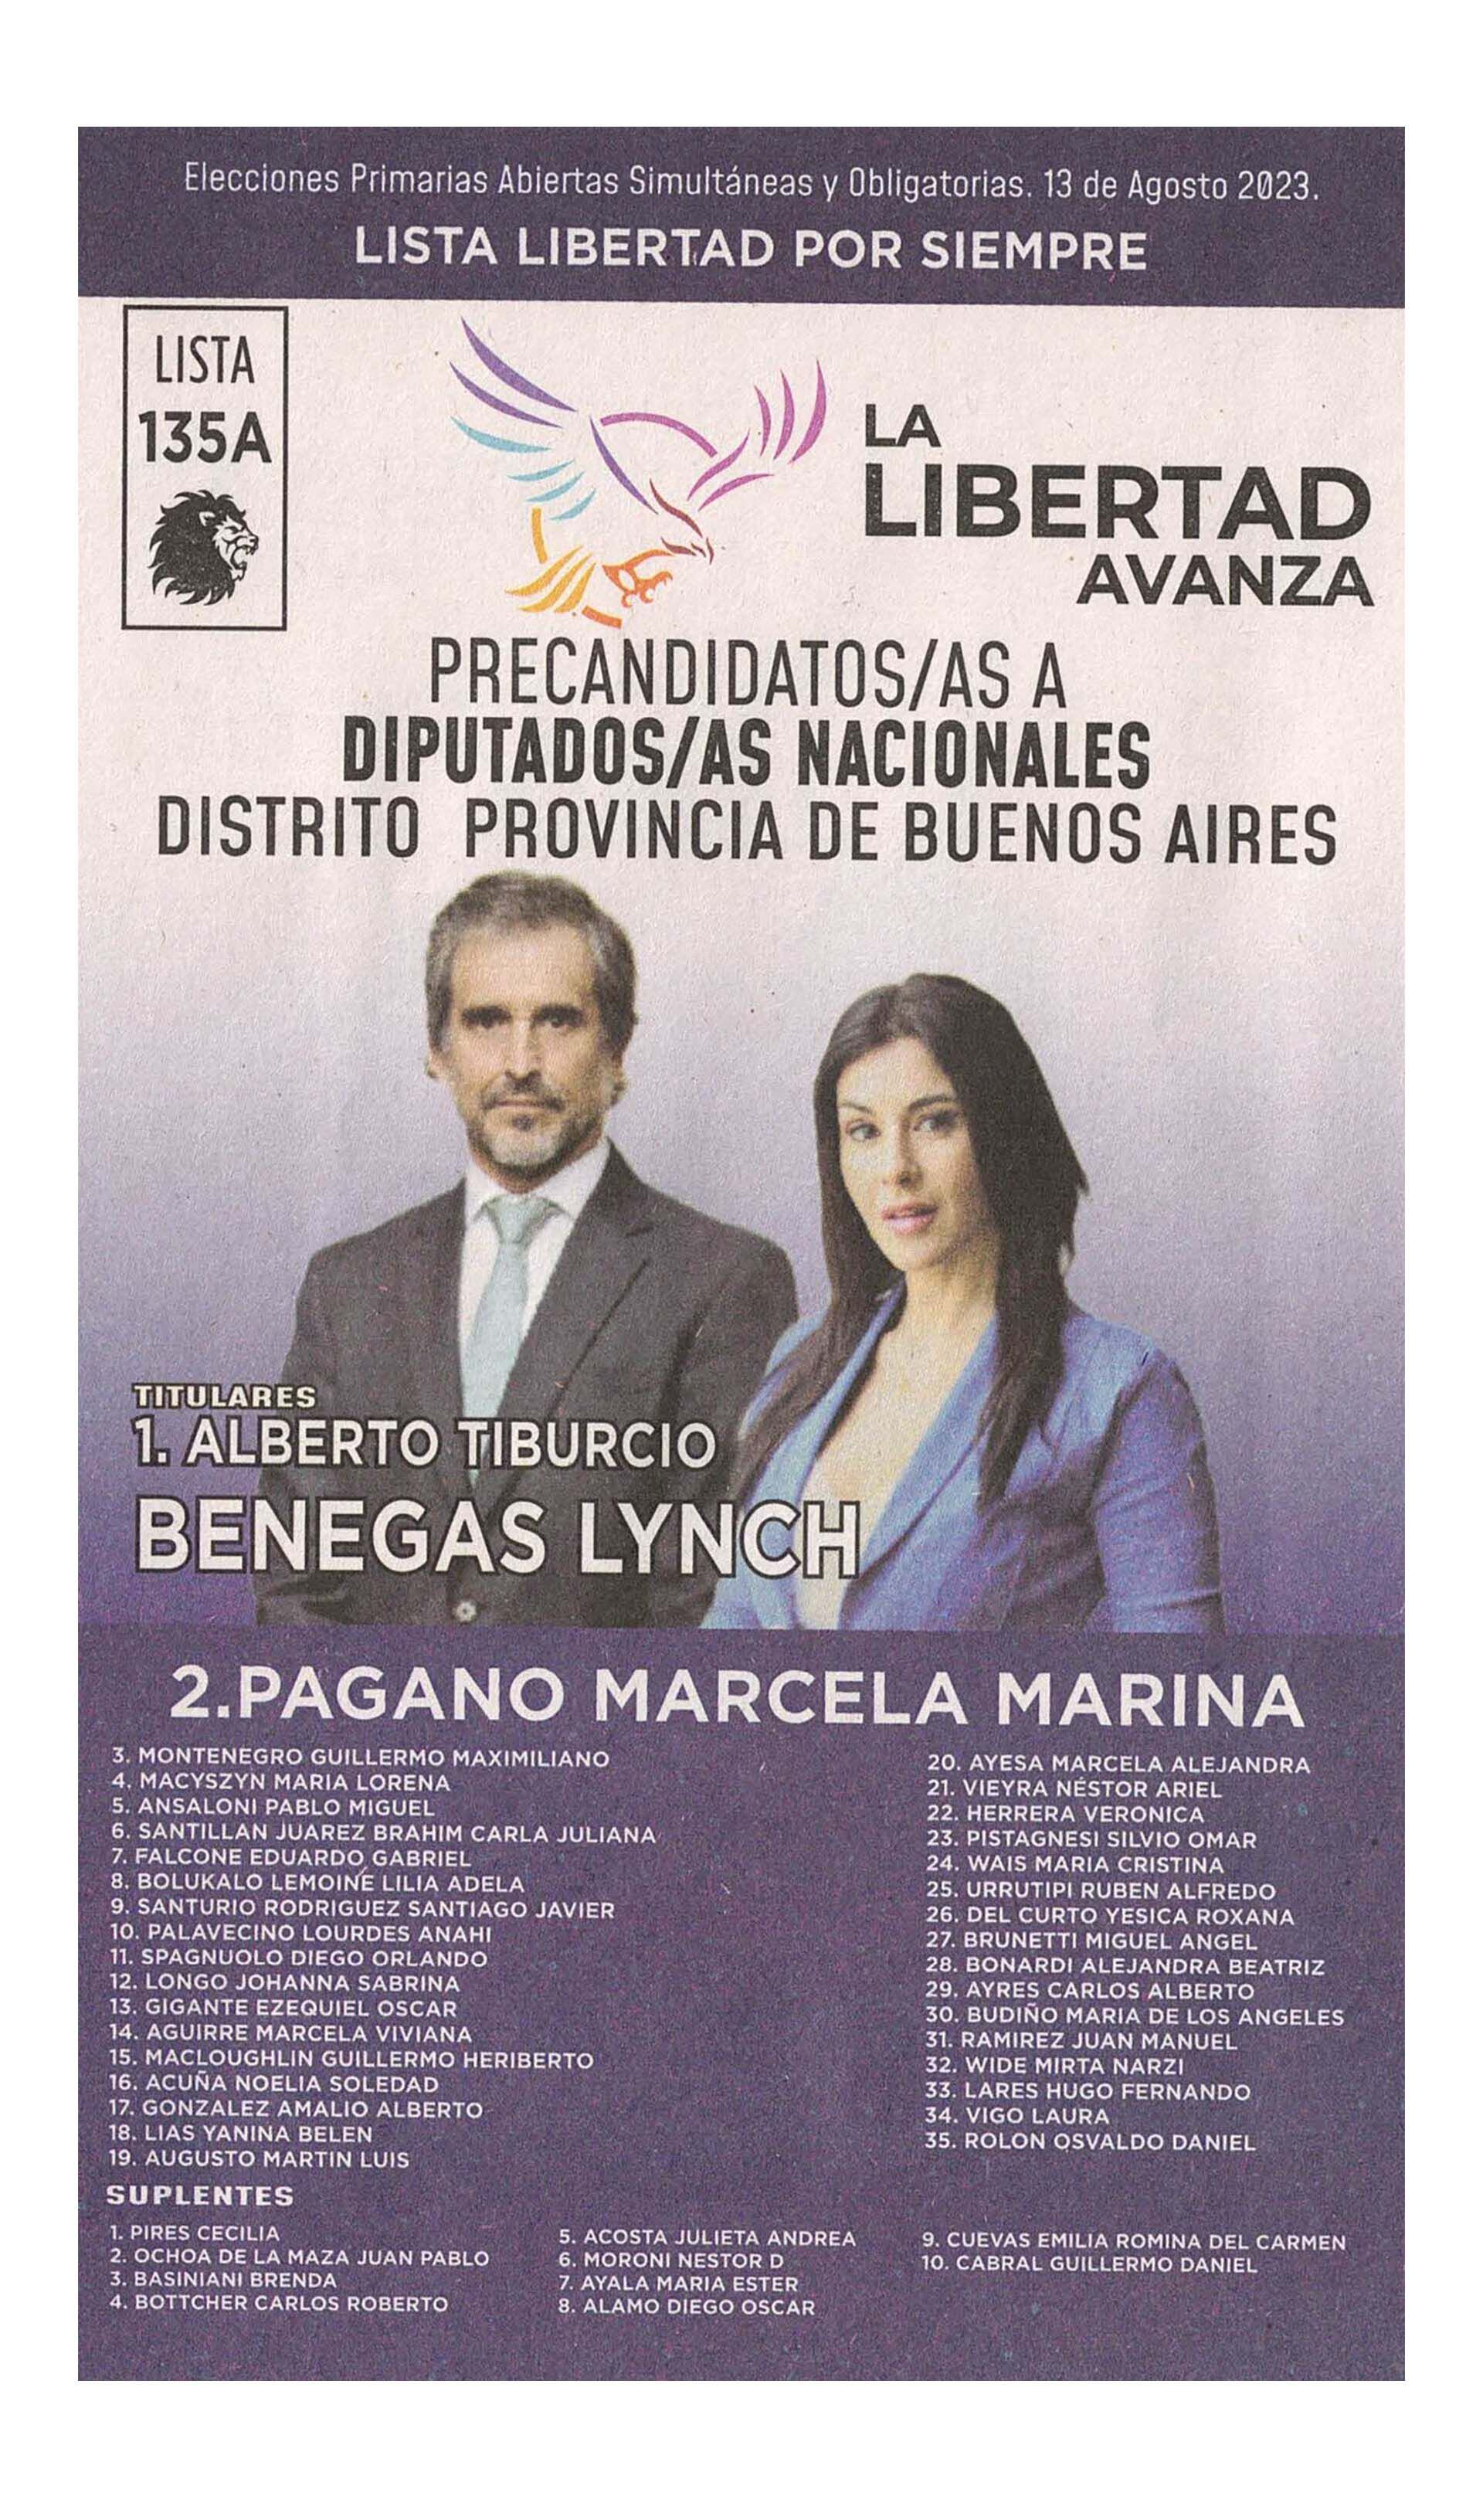 La boleta oficial de La Libertad Avanza de precandidatos a diputados nacionales en Buenos Aires